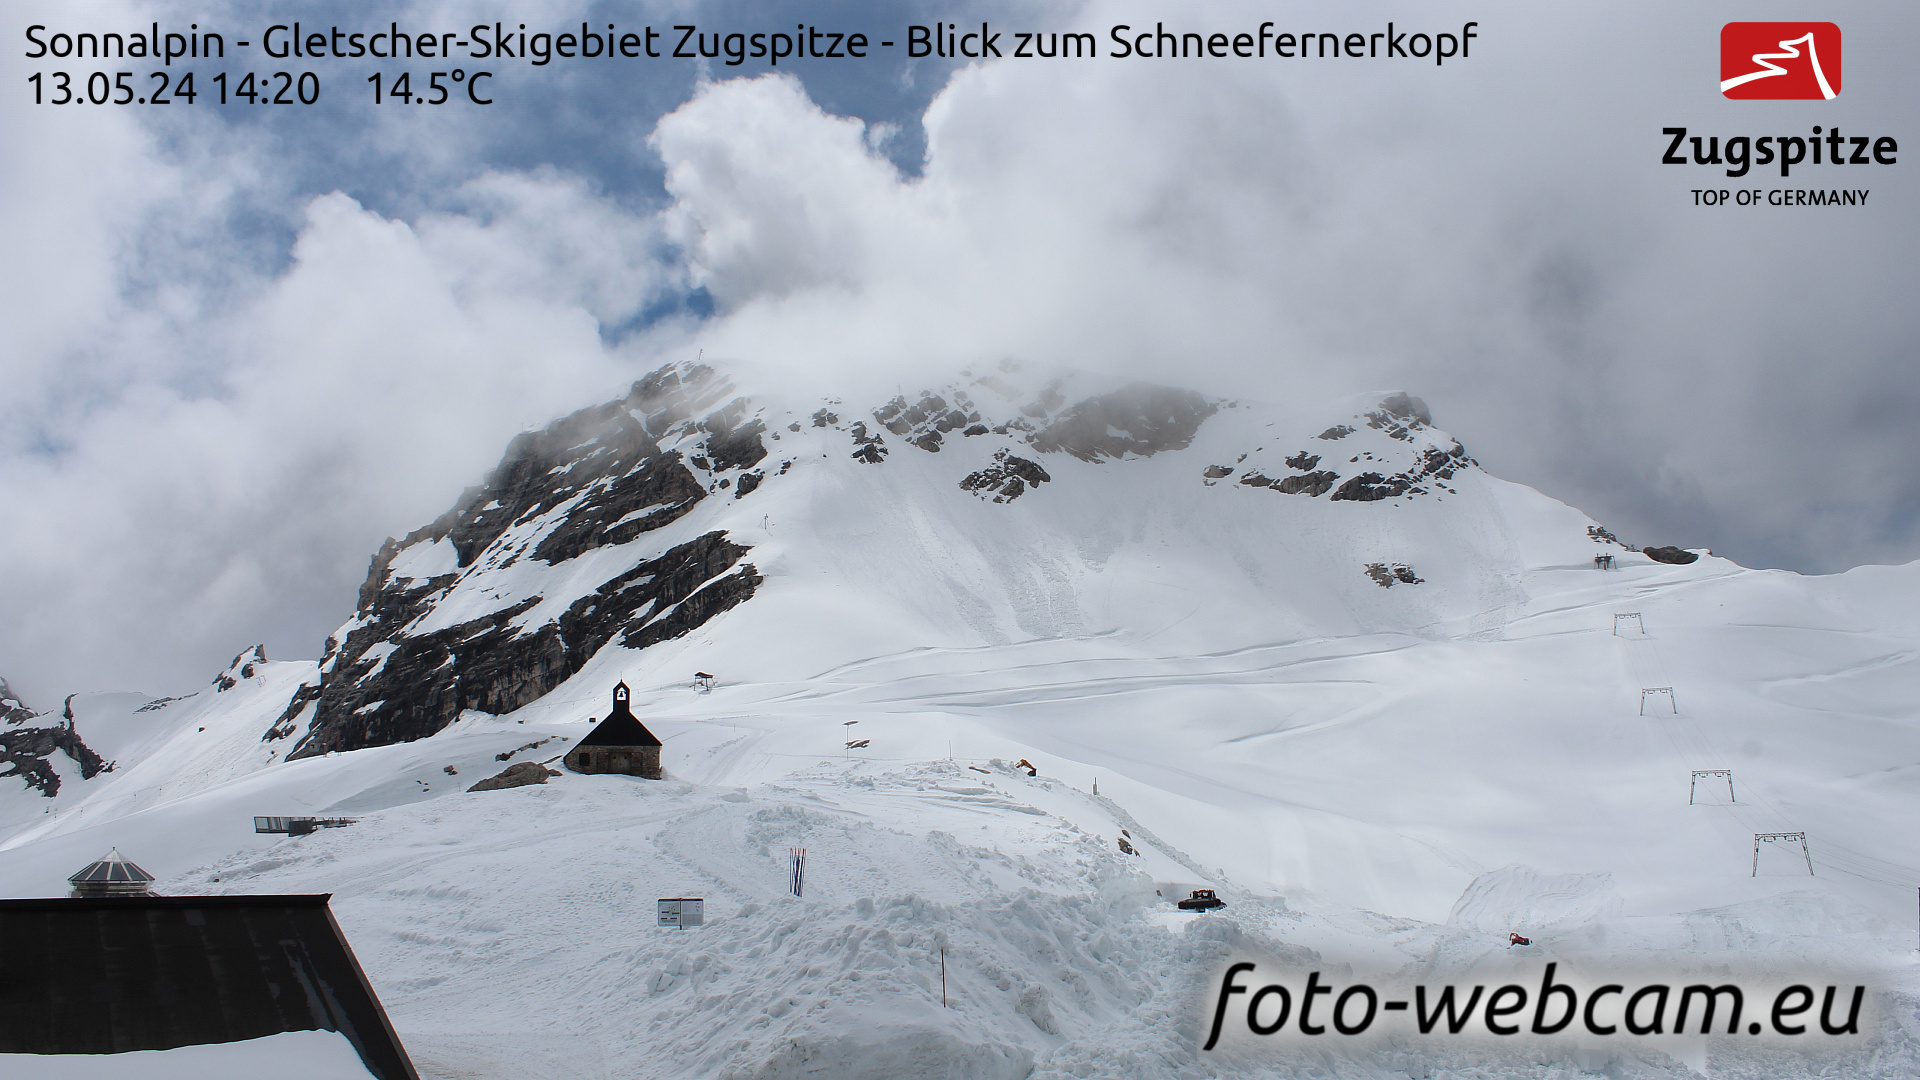 Zugspitze Wed. 14:24